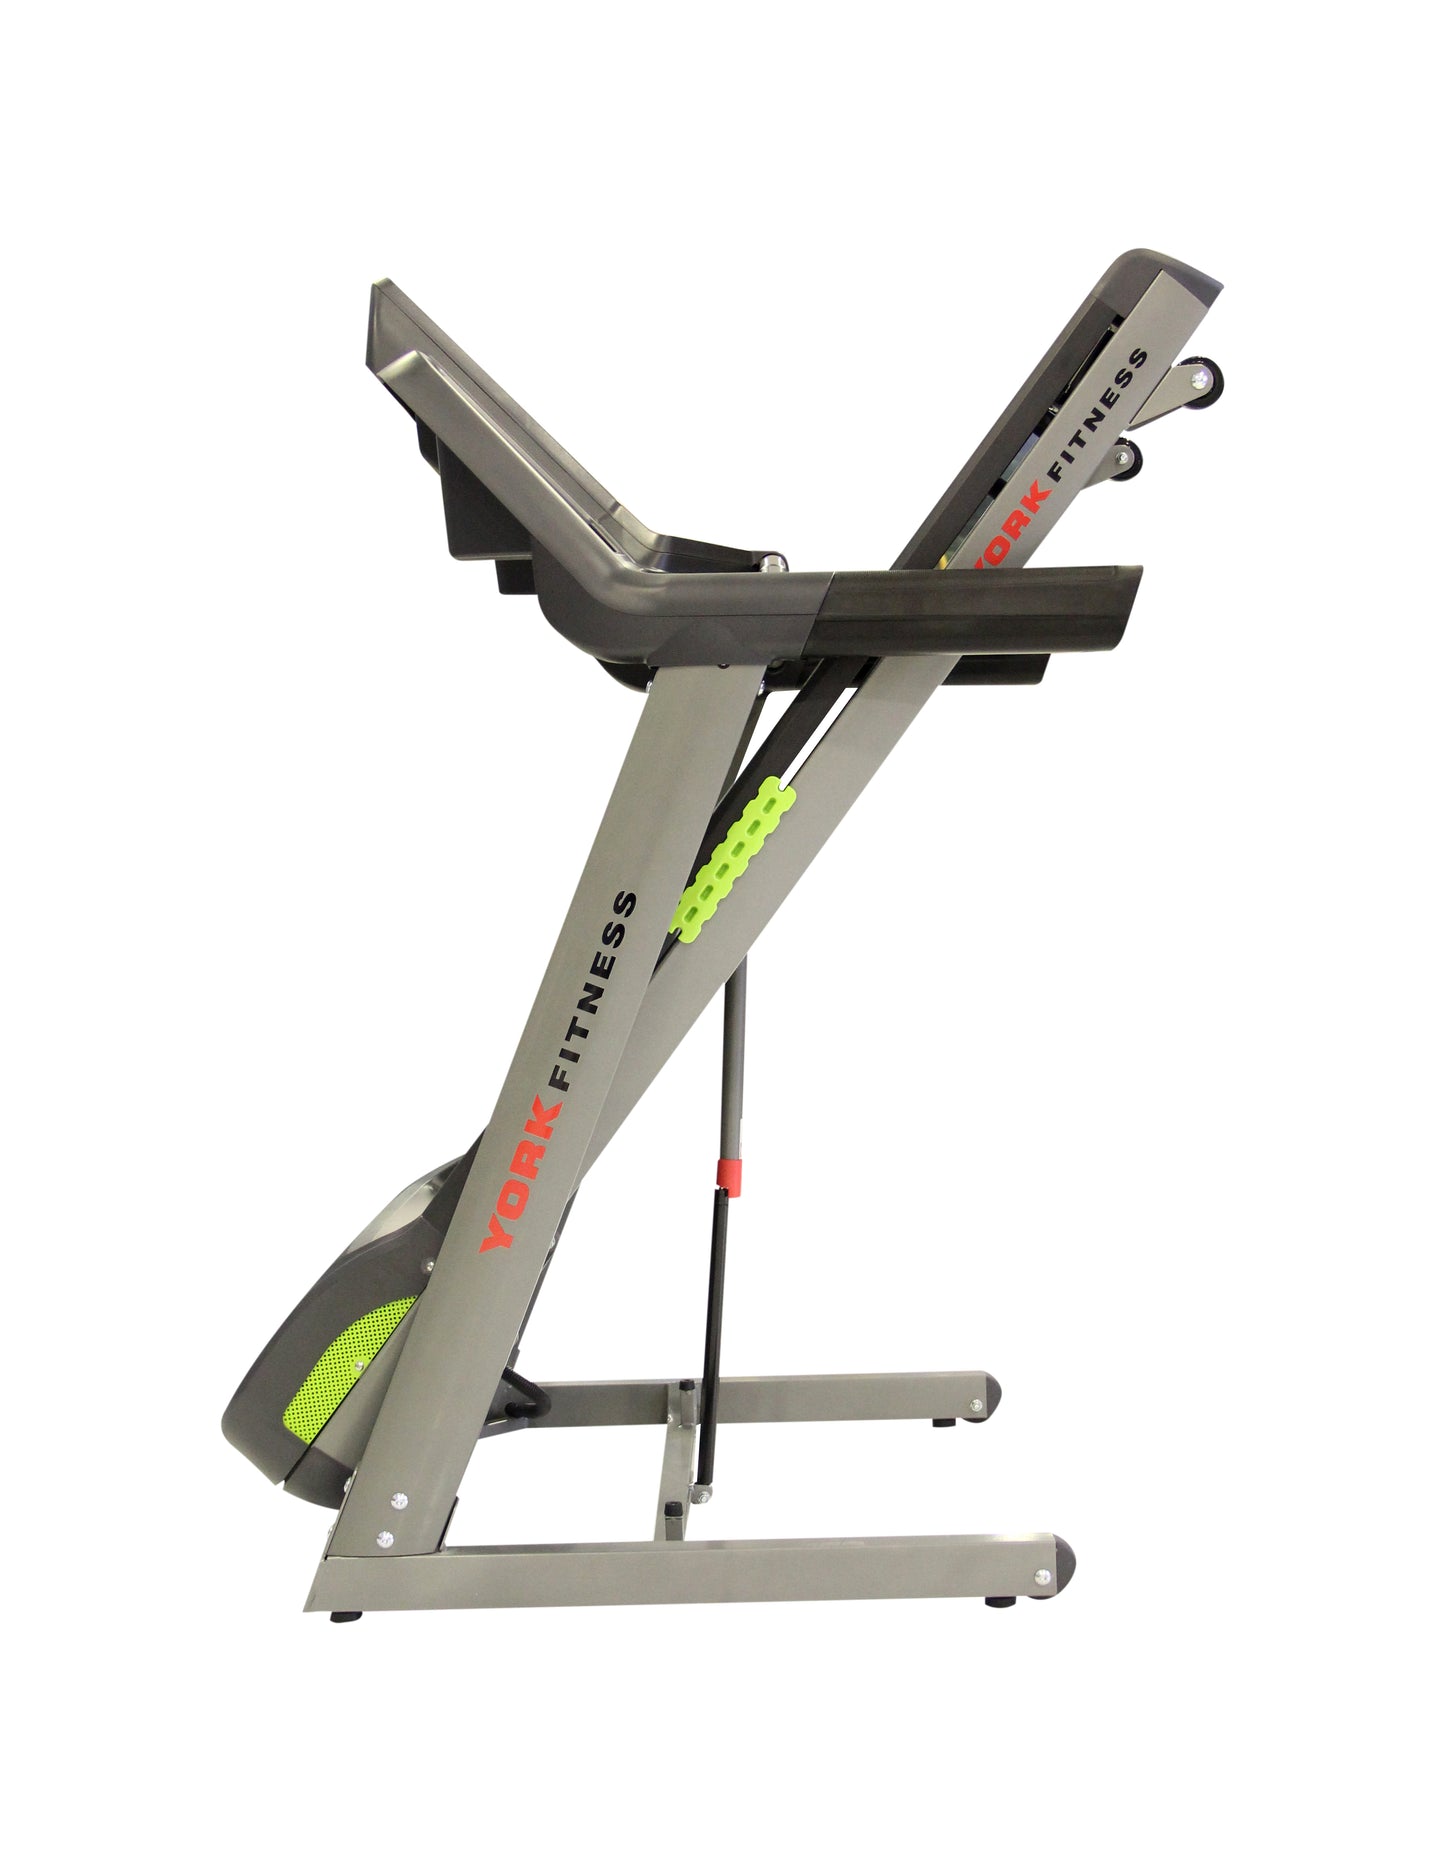 York Fitness Treadmill - 2.5 HP